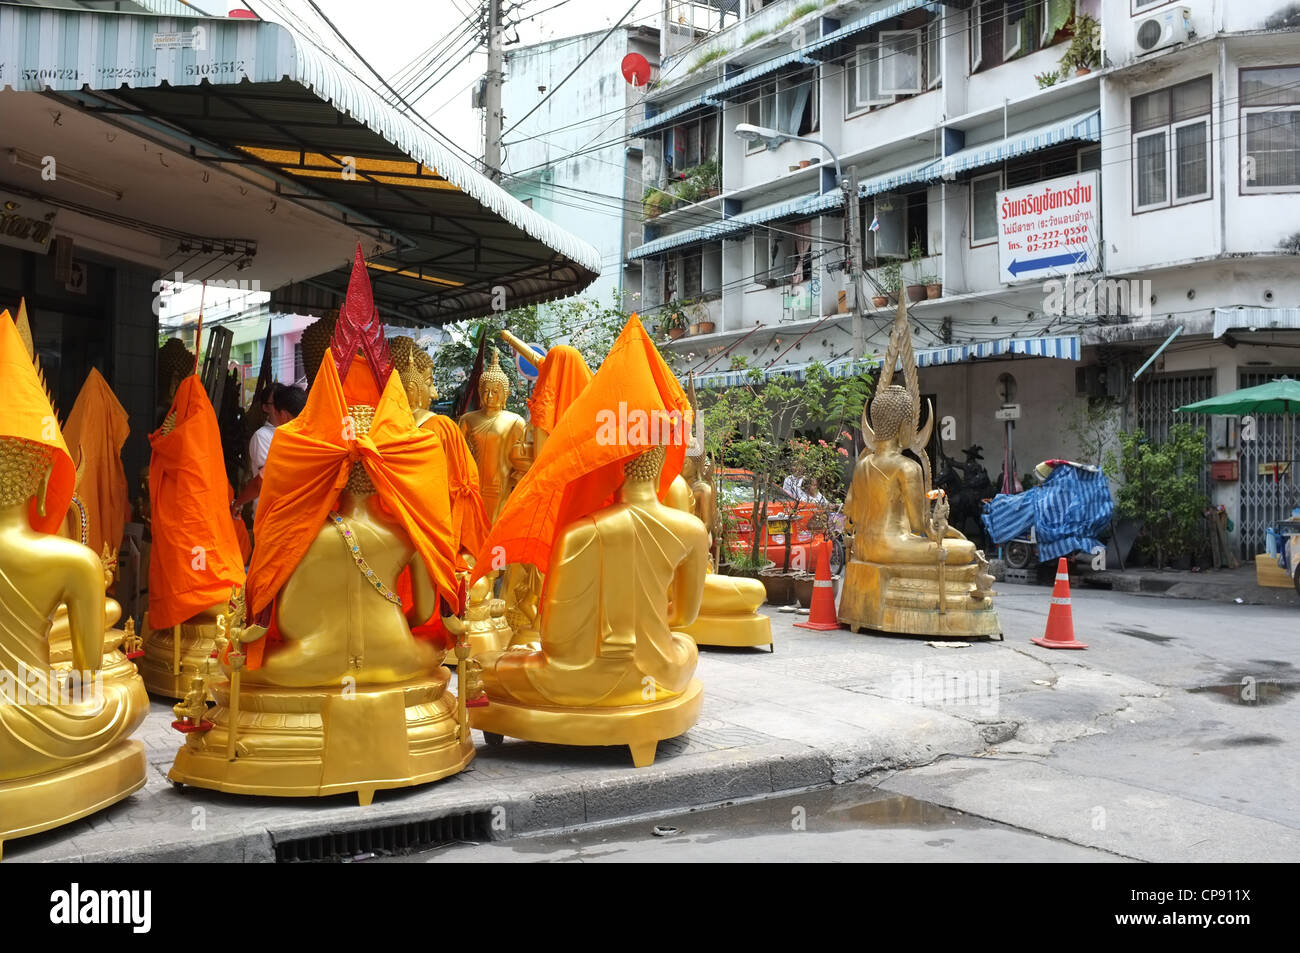 Images de bouddha vu ici en vente à l'extérieur d'une boutique à Bangkok. Banque D'Images